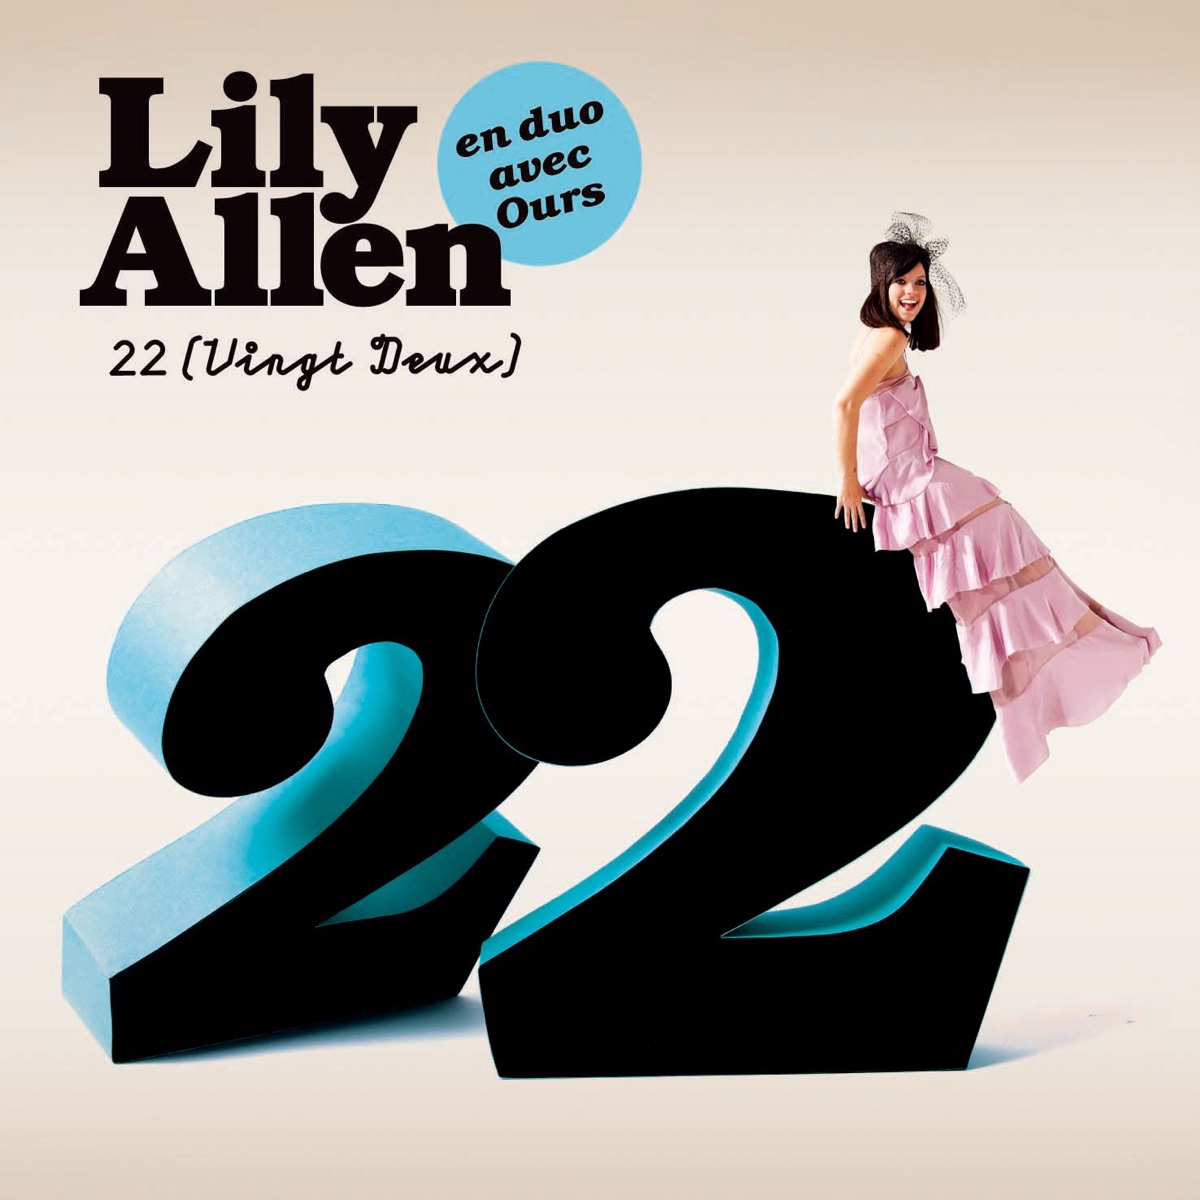 Lily Allen featuring Ours — 22 (Vingt-deux) cover artwork